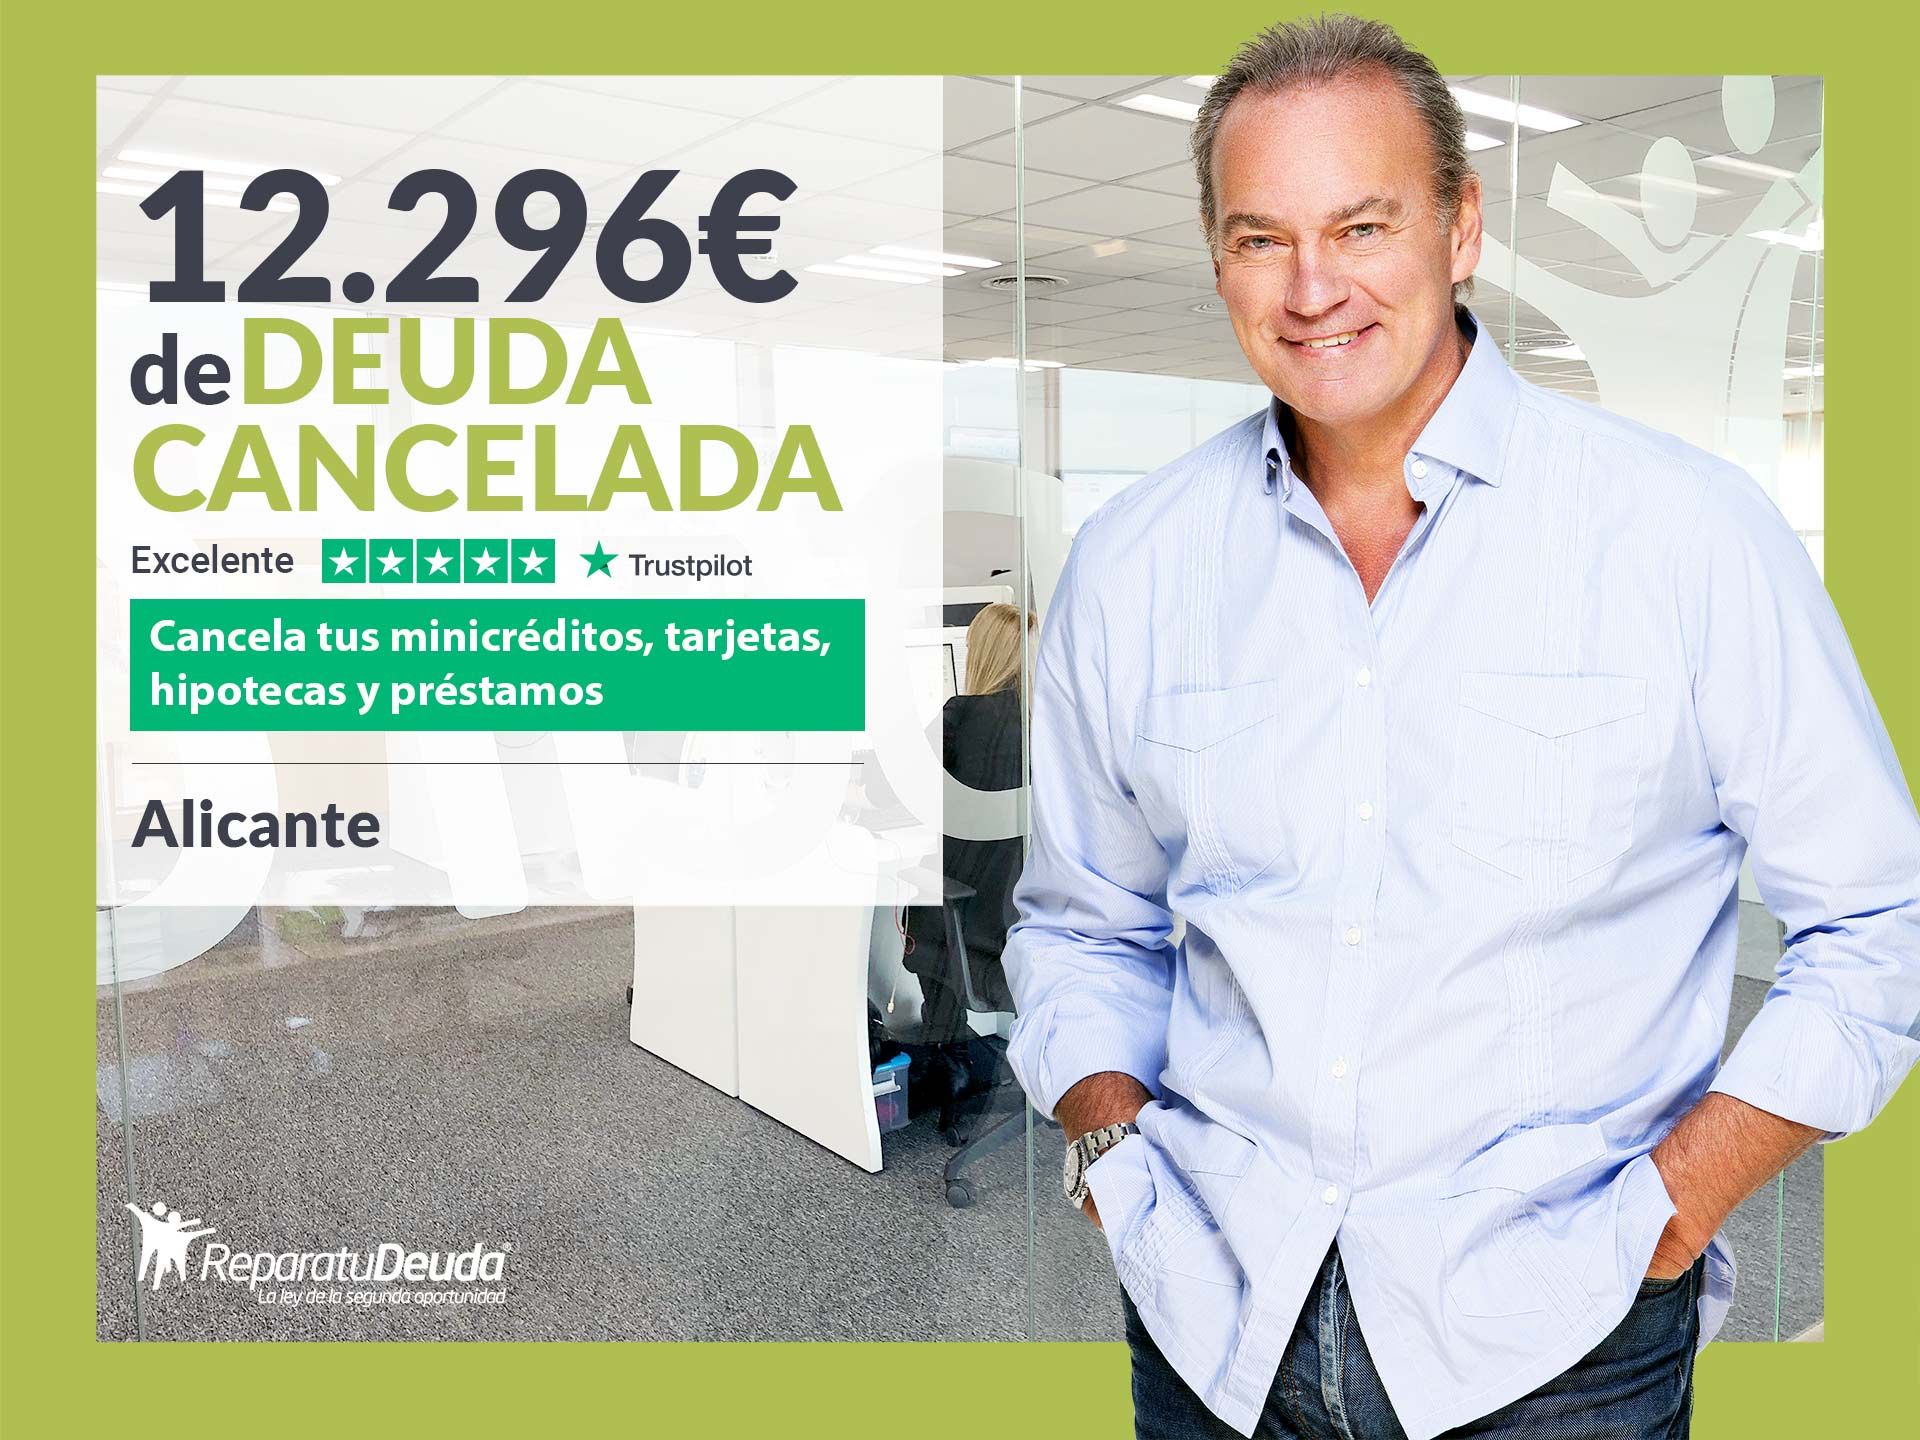 Repara tu Deuda cancela 12.296? en Alicante (Comunidad Valenciana) con la Ley de Segunda Oportunidad